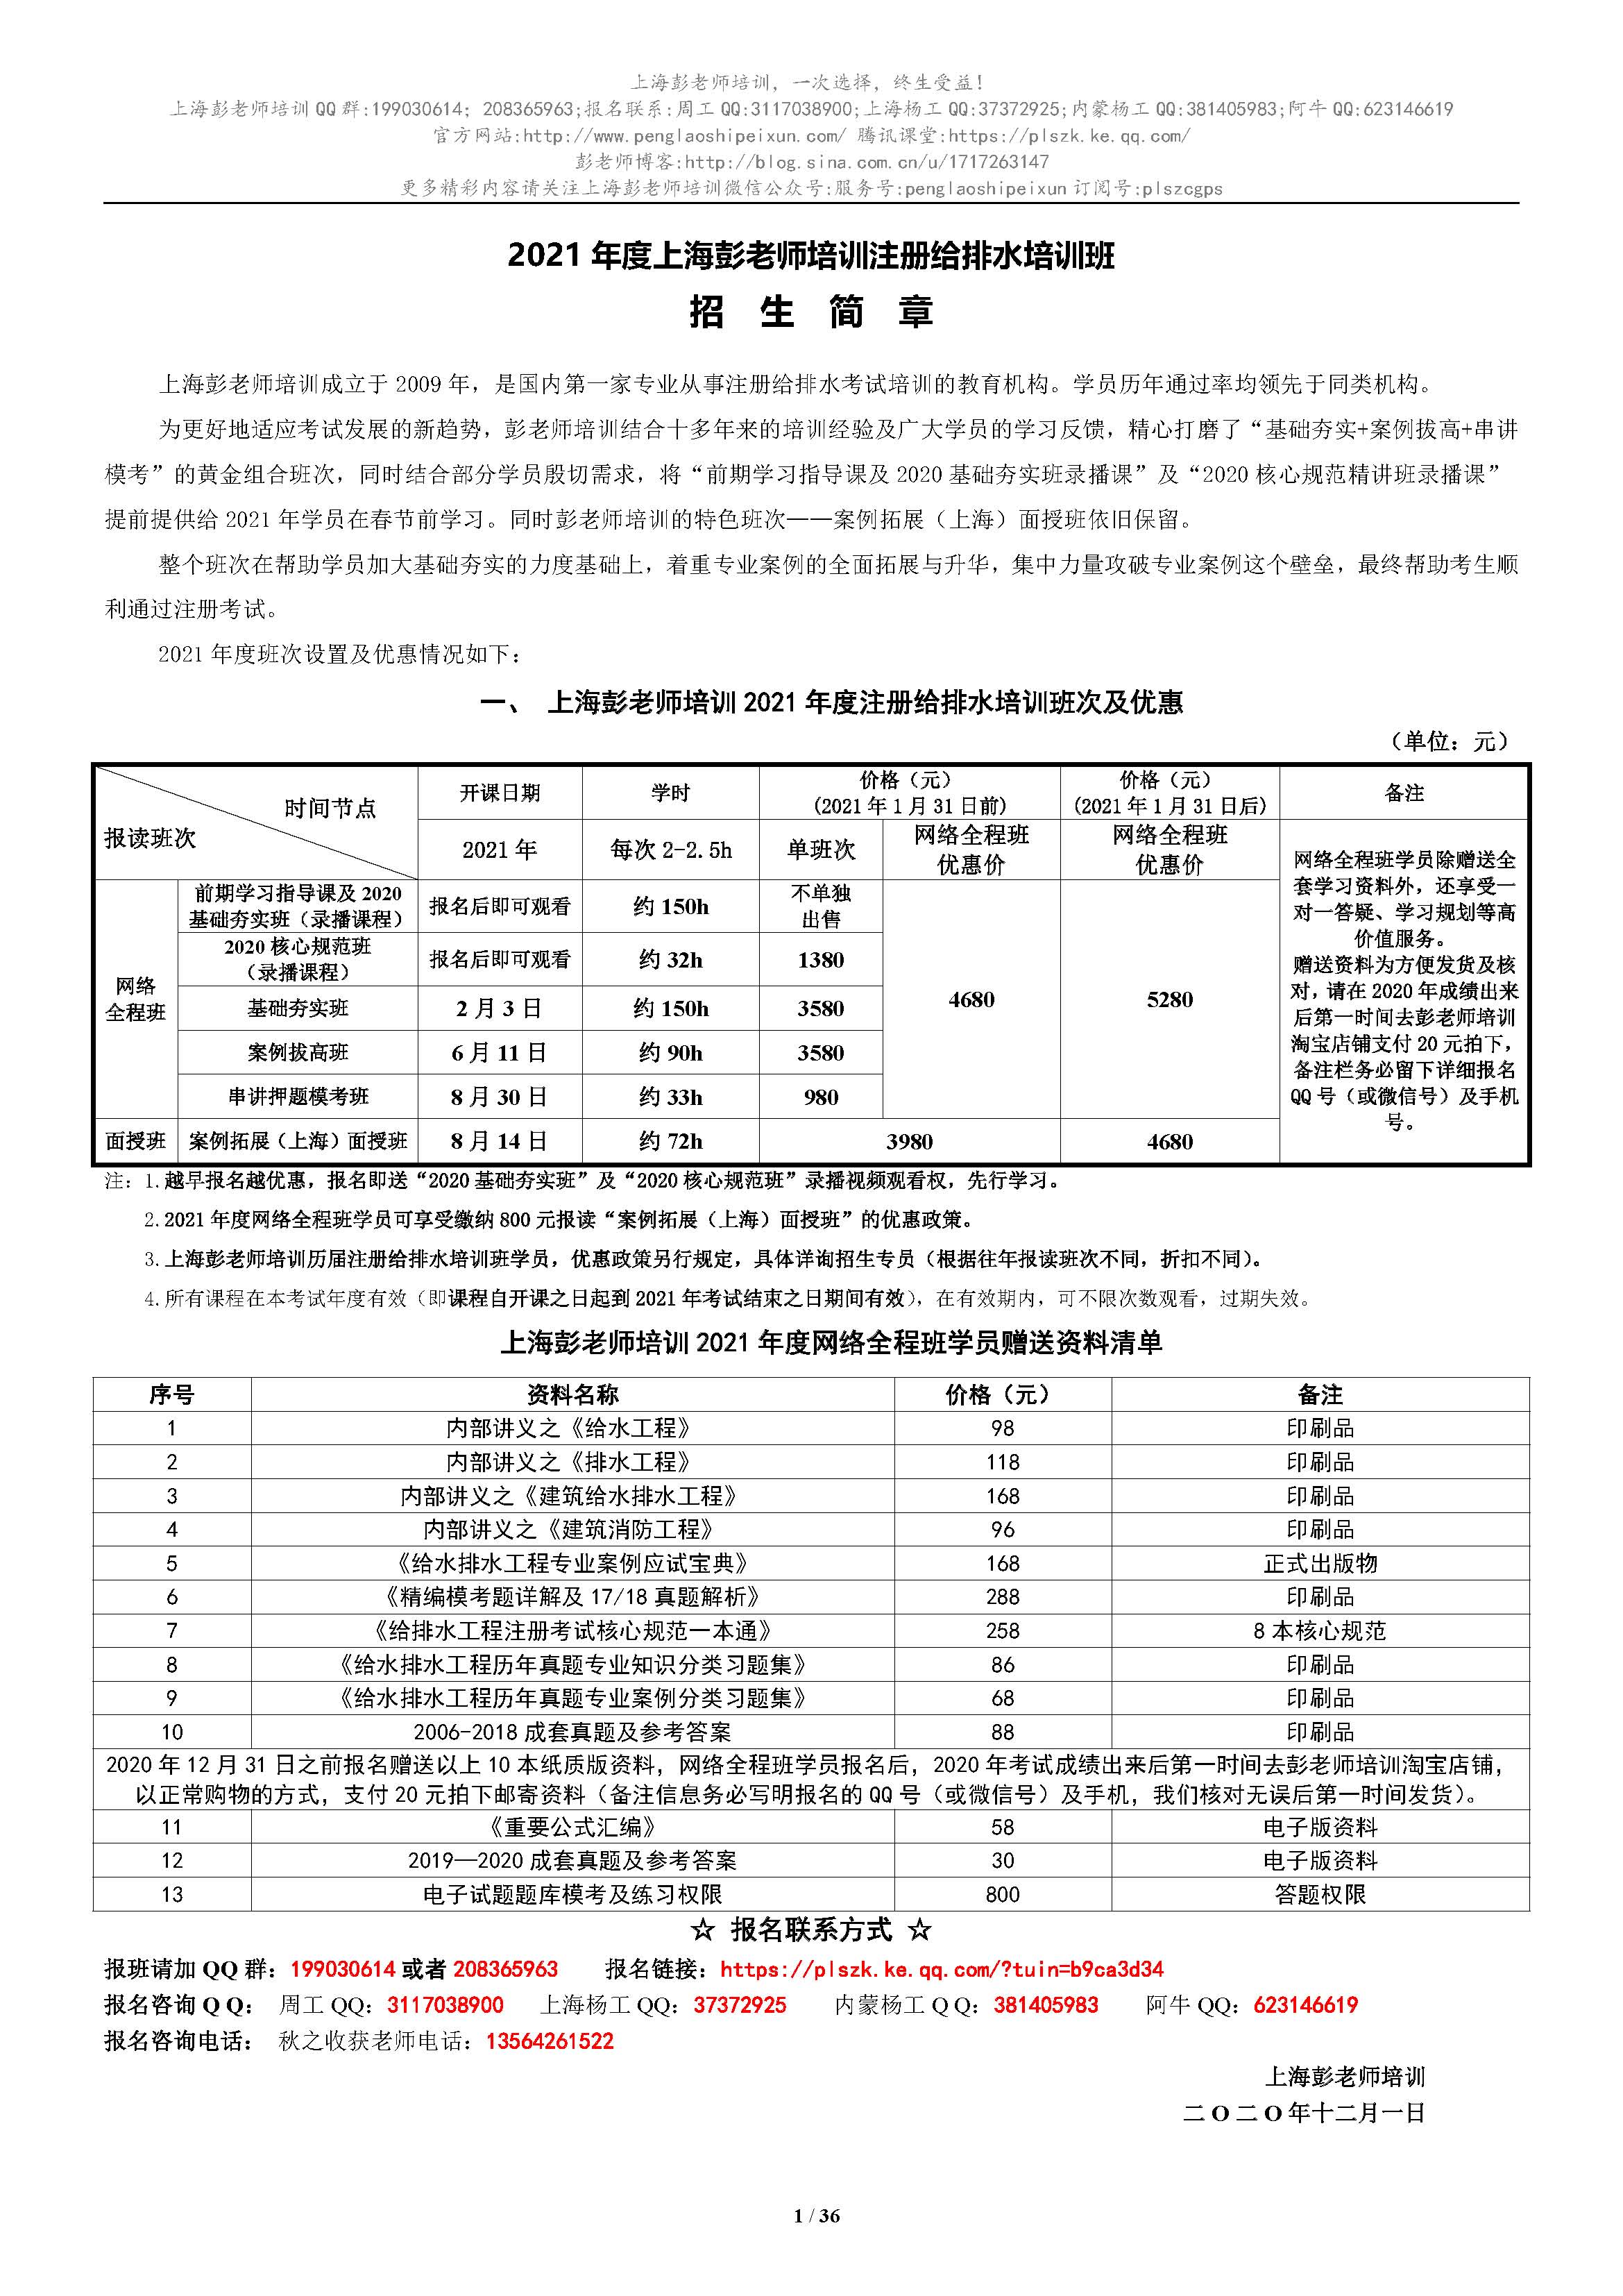 2021年度注册给排水培训招生简章(简版)2020.12.jpg